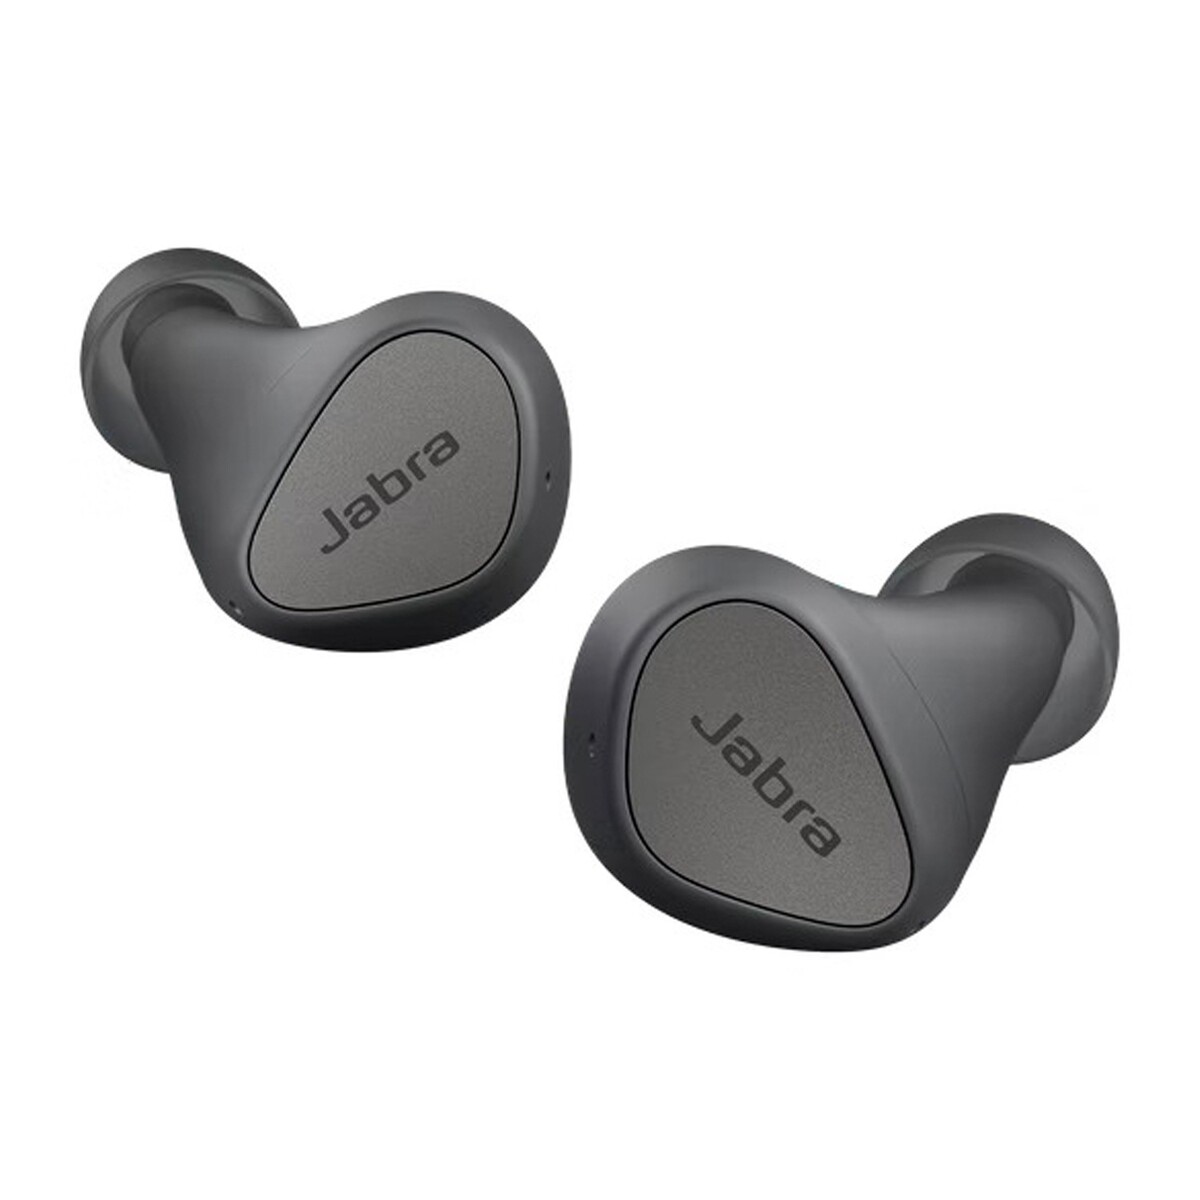 Jabra Elite 3 in Ear True Wireless Earbuds Dark Grey